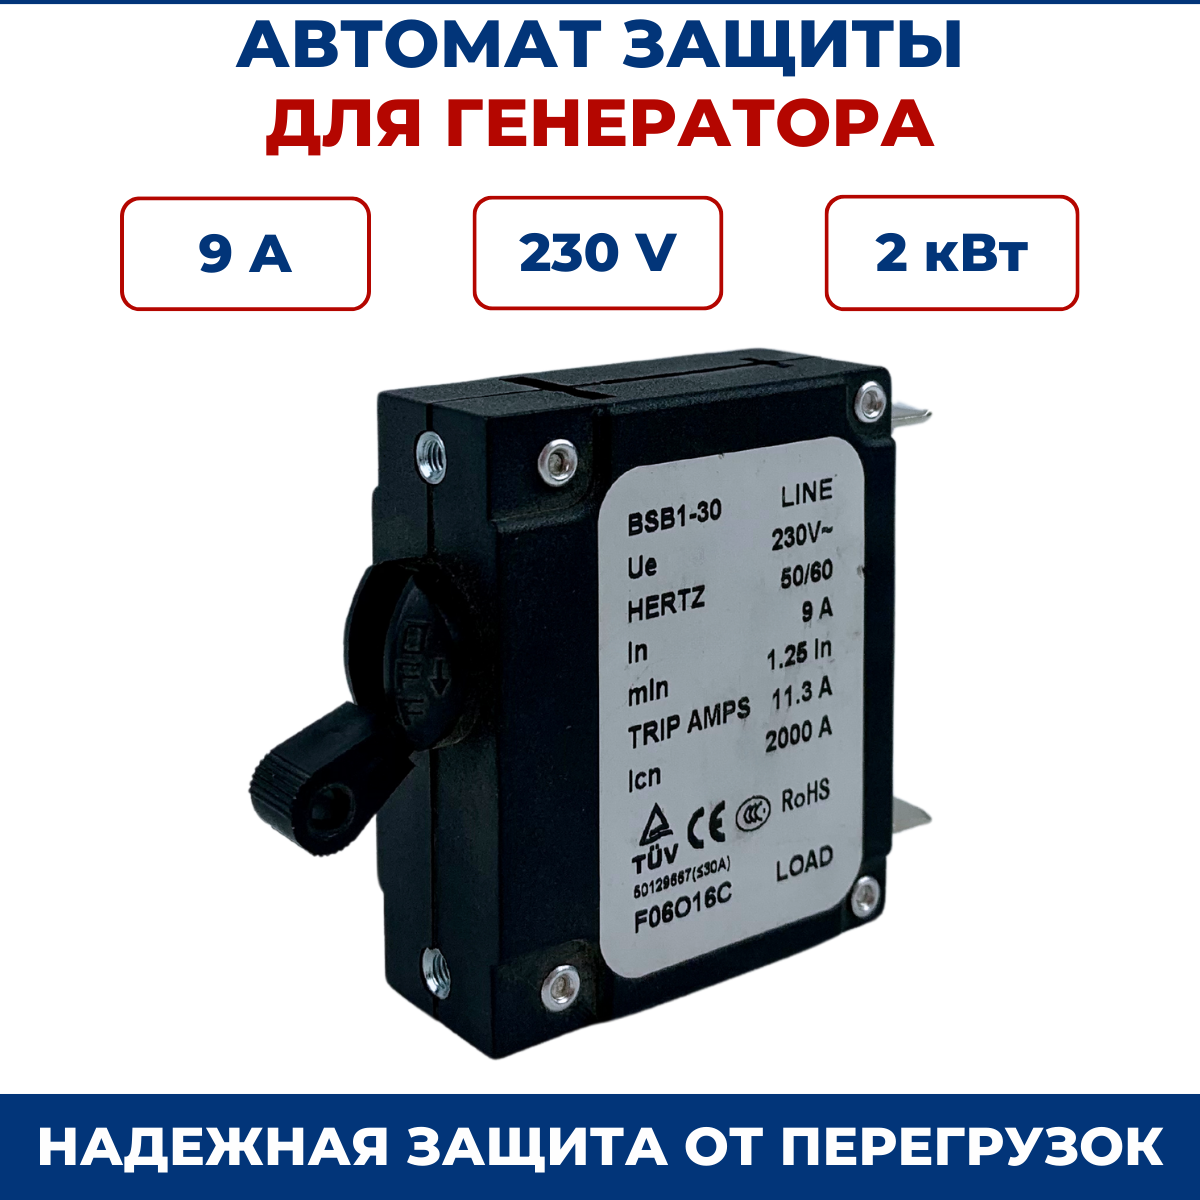 Выключатель - автомат защиты для бензогенераторов 9А 230В для генераторов 2кВт